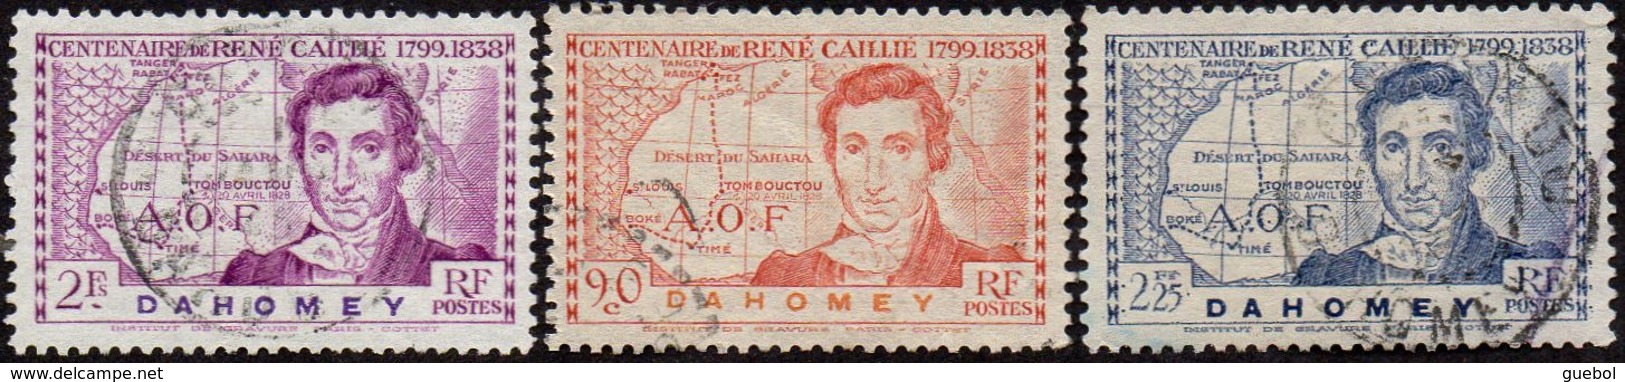 Détail De La Série Centenaire René Caillié Obl. Dahomey N° 110 à 112 - 1939 Centenaire De René Caillé